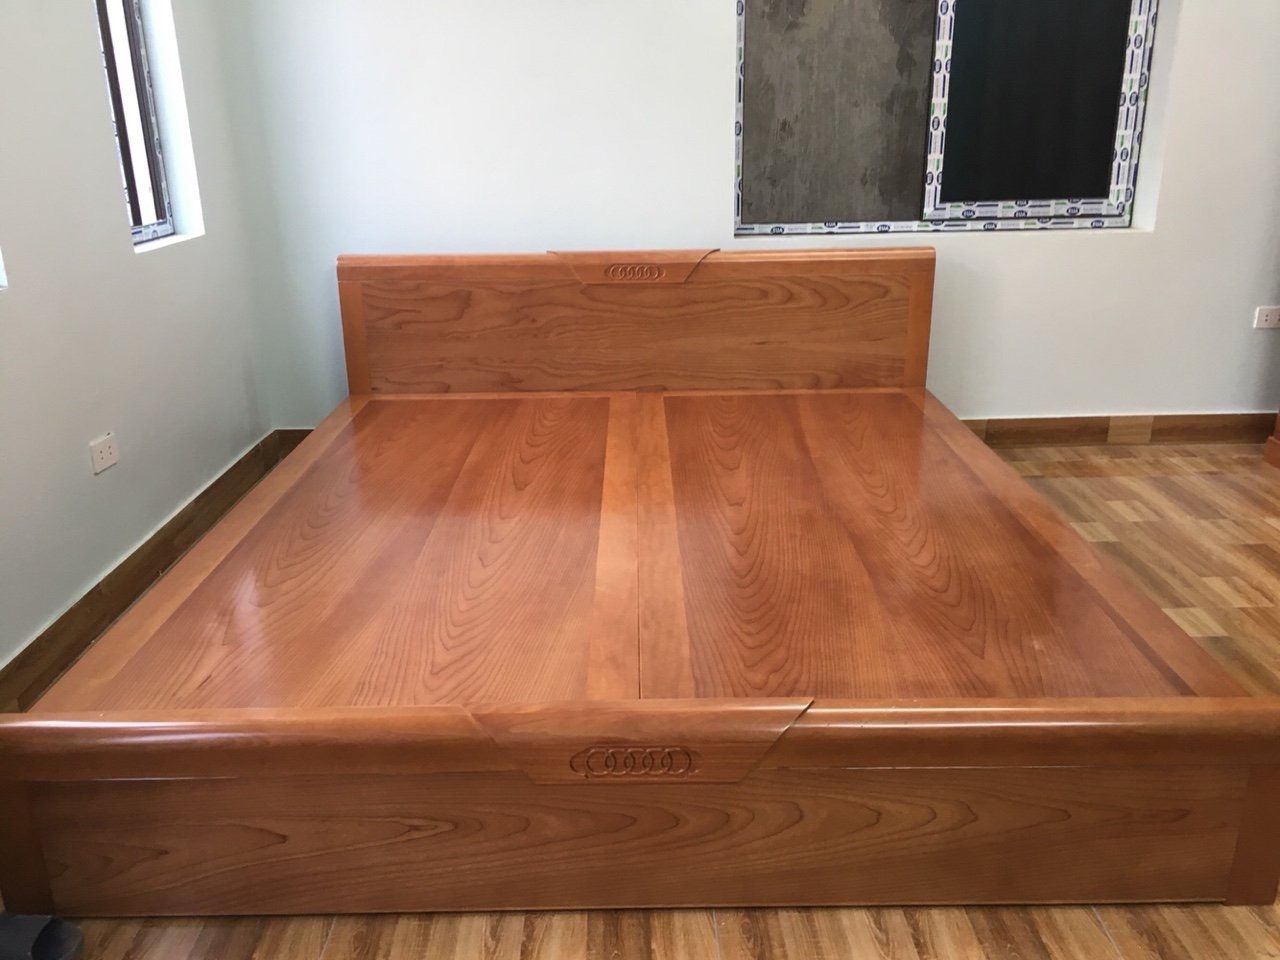 Thi công giường phản gỗ Hương nguyên khối cao cấp